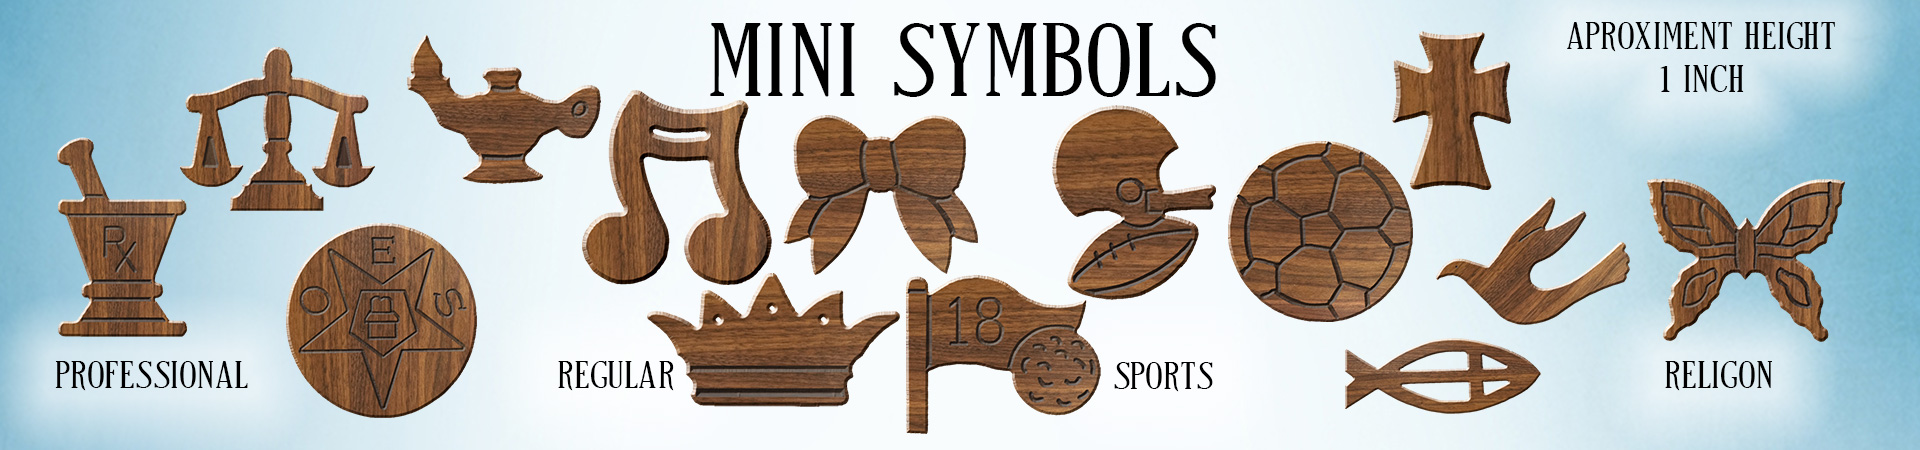 Greek Mini Symbols